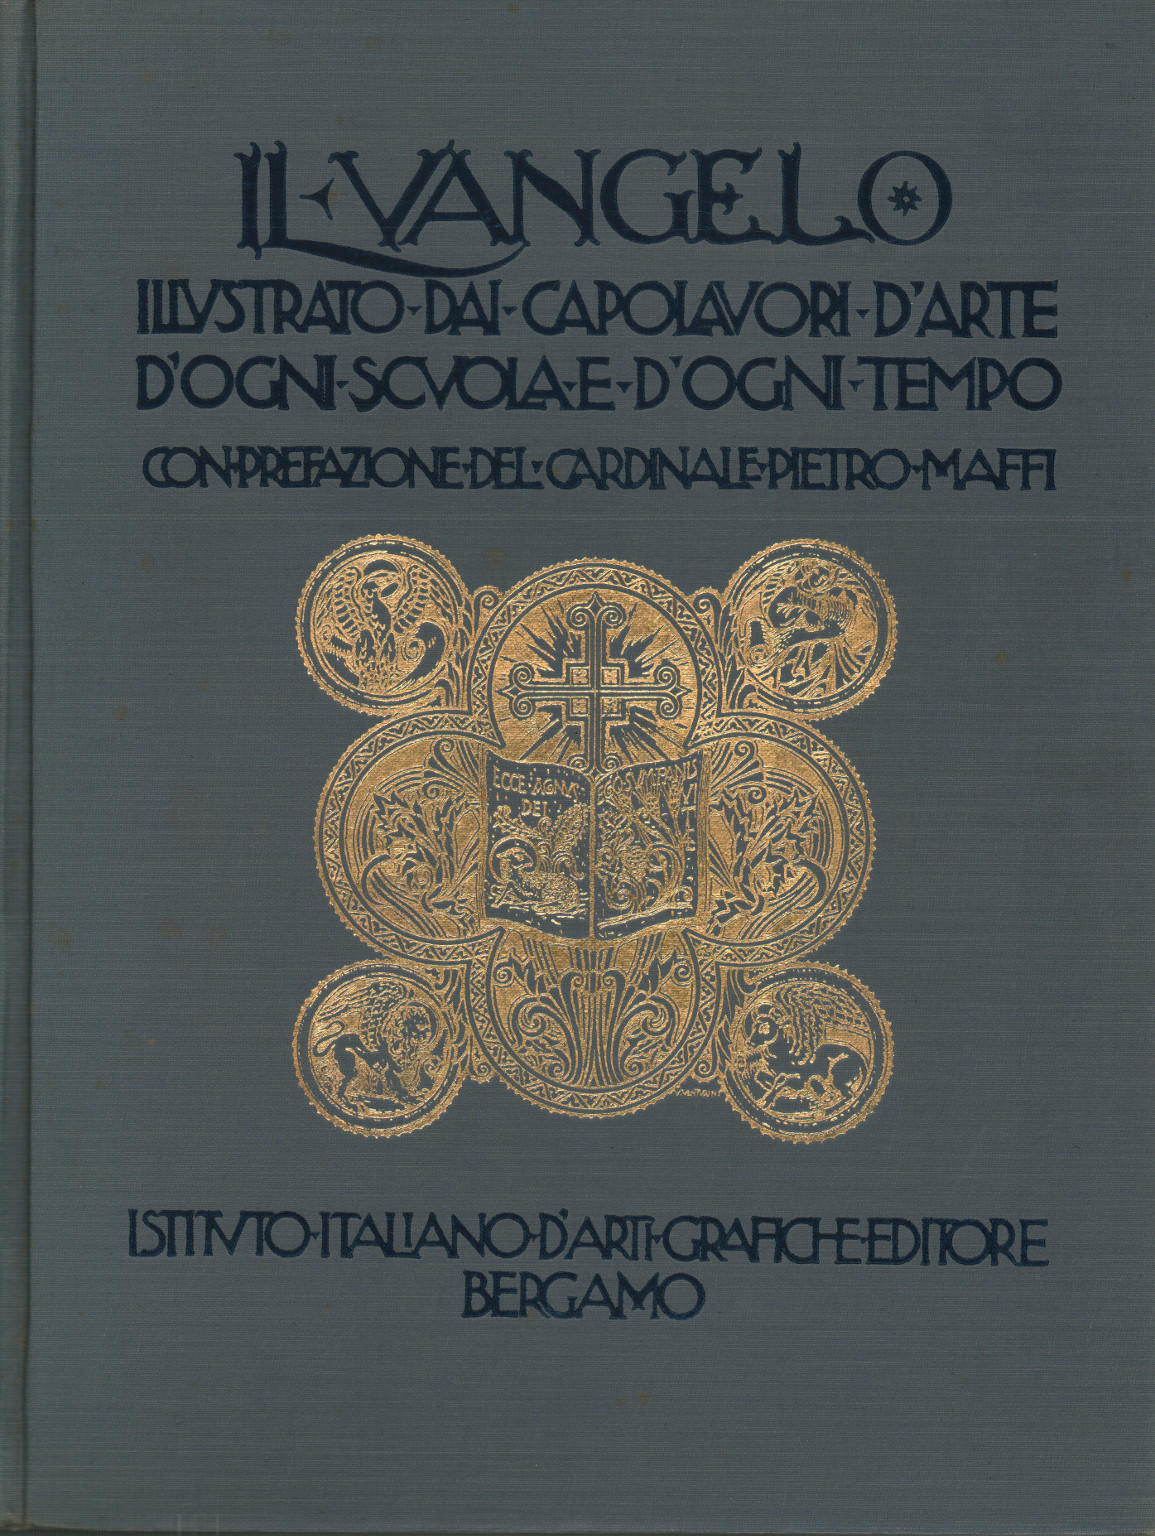 Il Vangelo illustrato dai capolavori d'arte d'og, s.a.